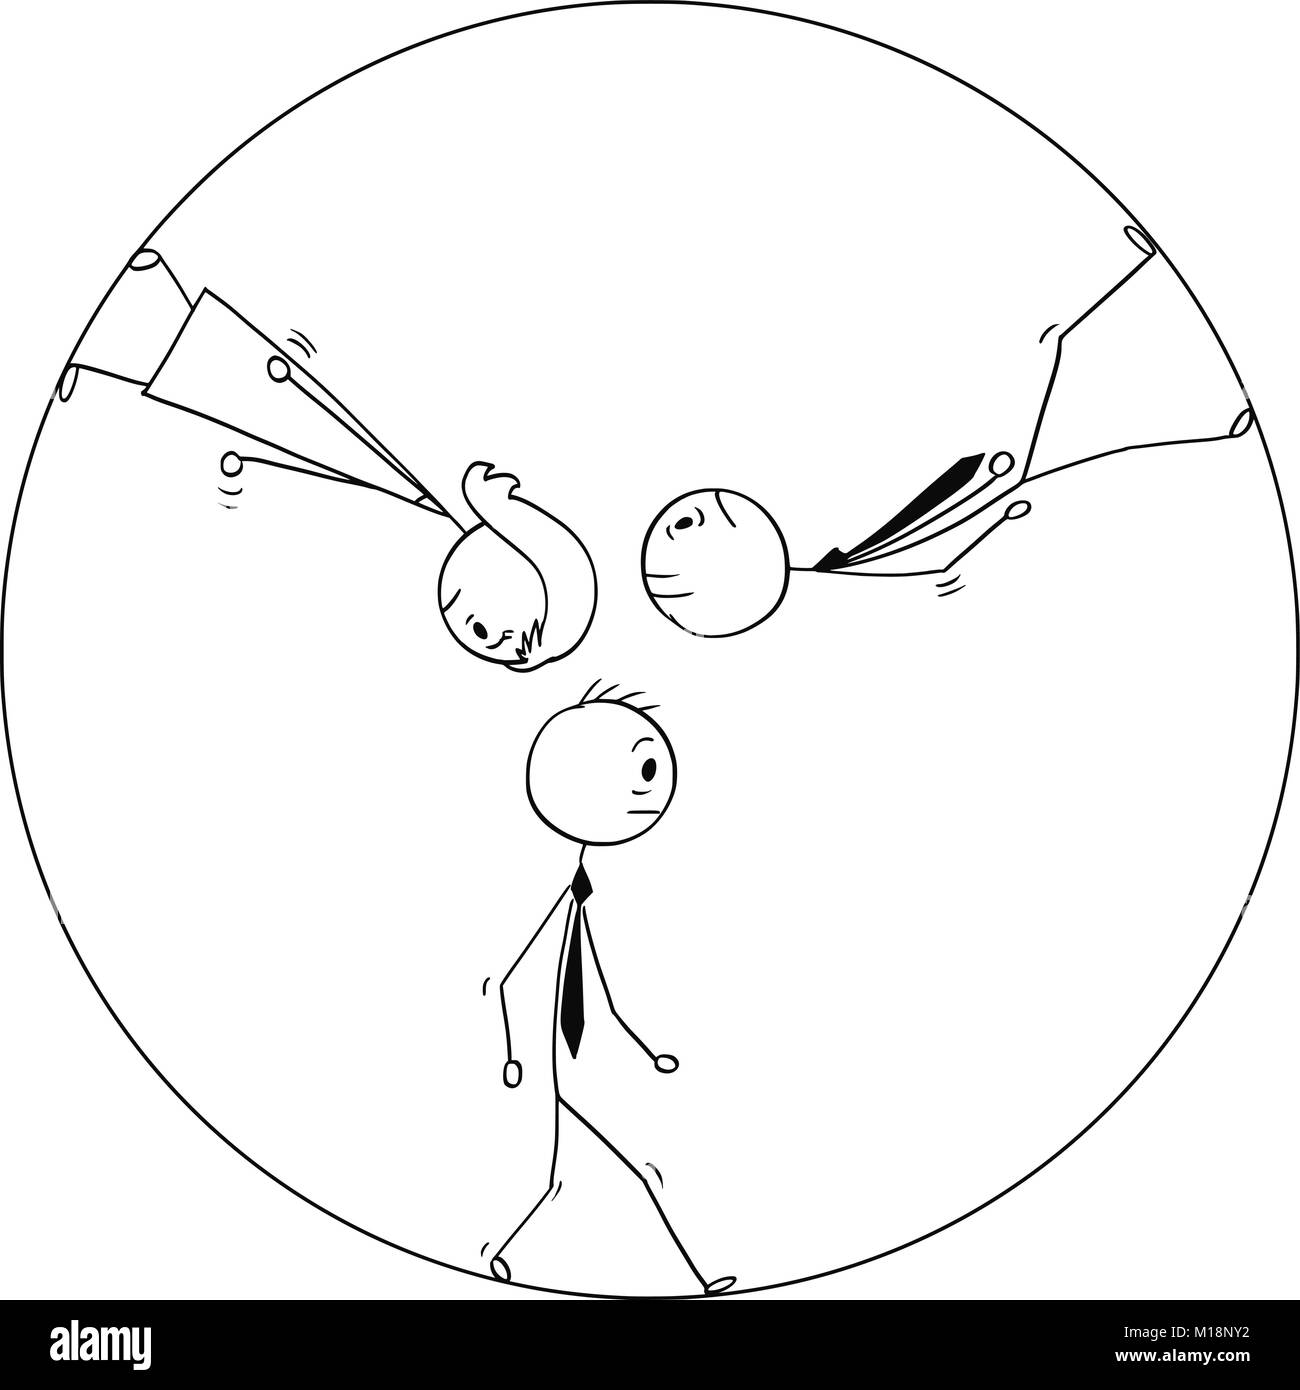 Konzeptionelle Cartoon von Traurig oder müde Geschäftsleute gehen im Kreis oder Rad Stock Vektor